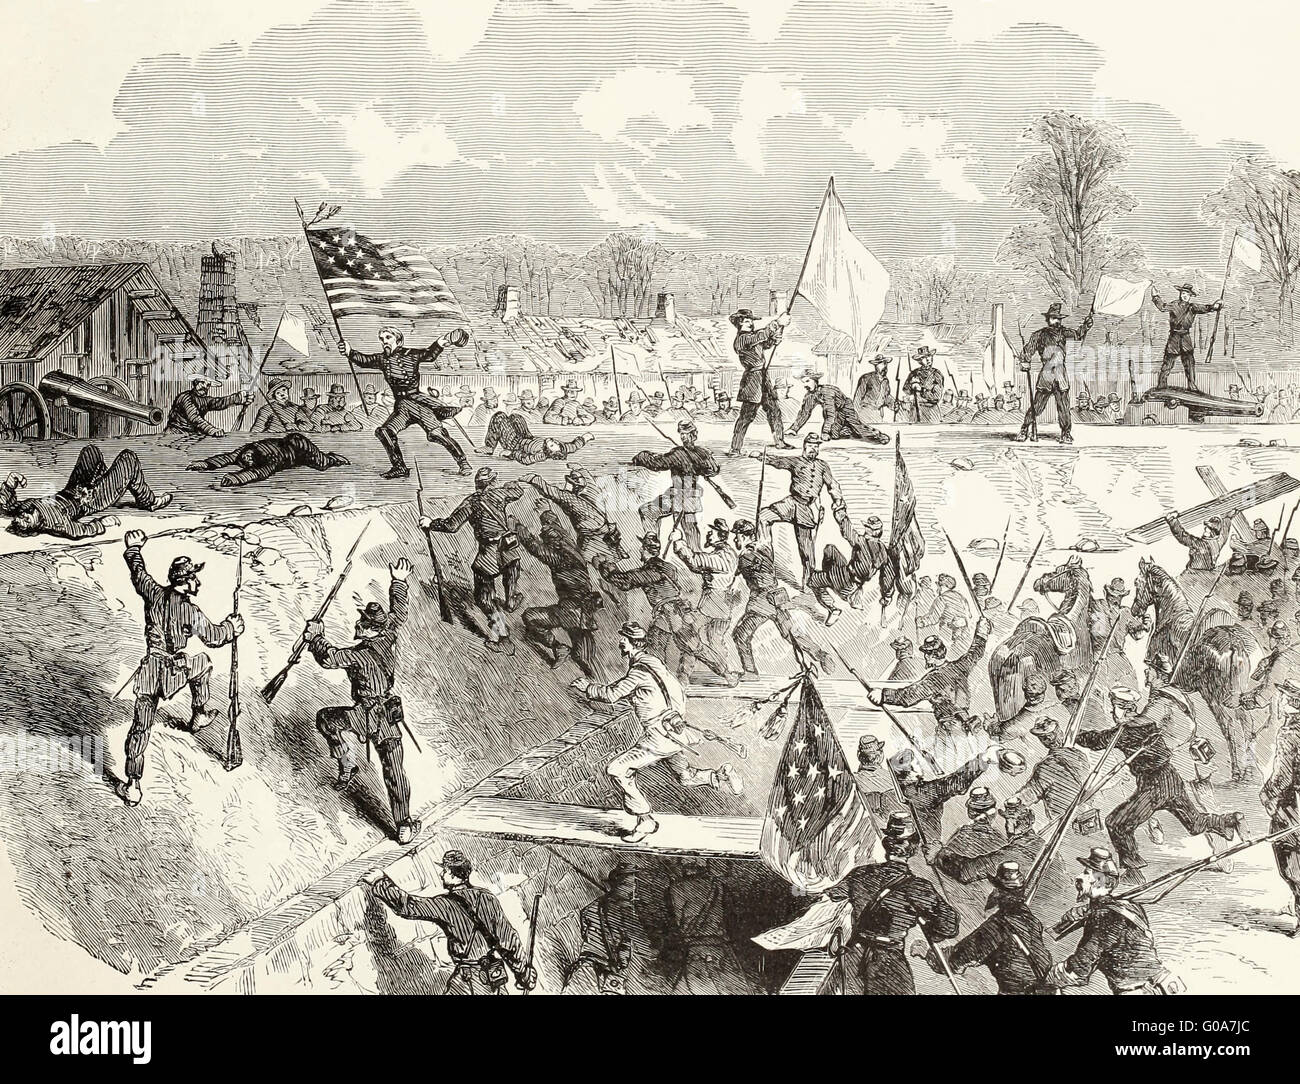 La capture de l'Arkansas Post, Arkansas - Général Stephen G Burbridge, accompagné de son personnel, la plantation des Stars and Stripes sur Fort Hindman, le 11 janvier 1863. Guerre civile USA Banque D'Images